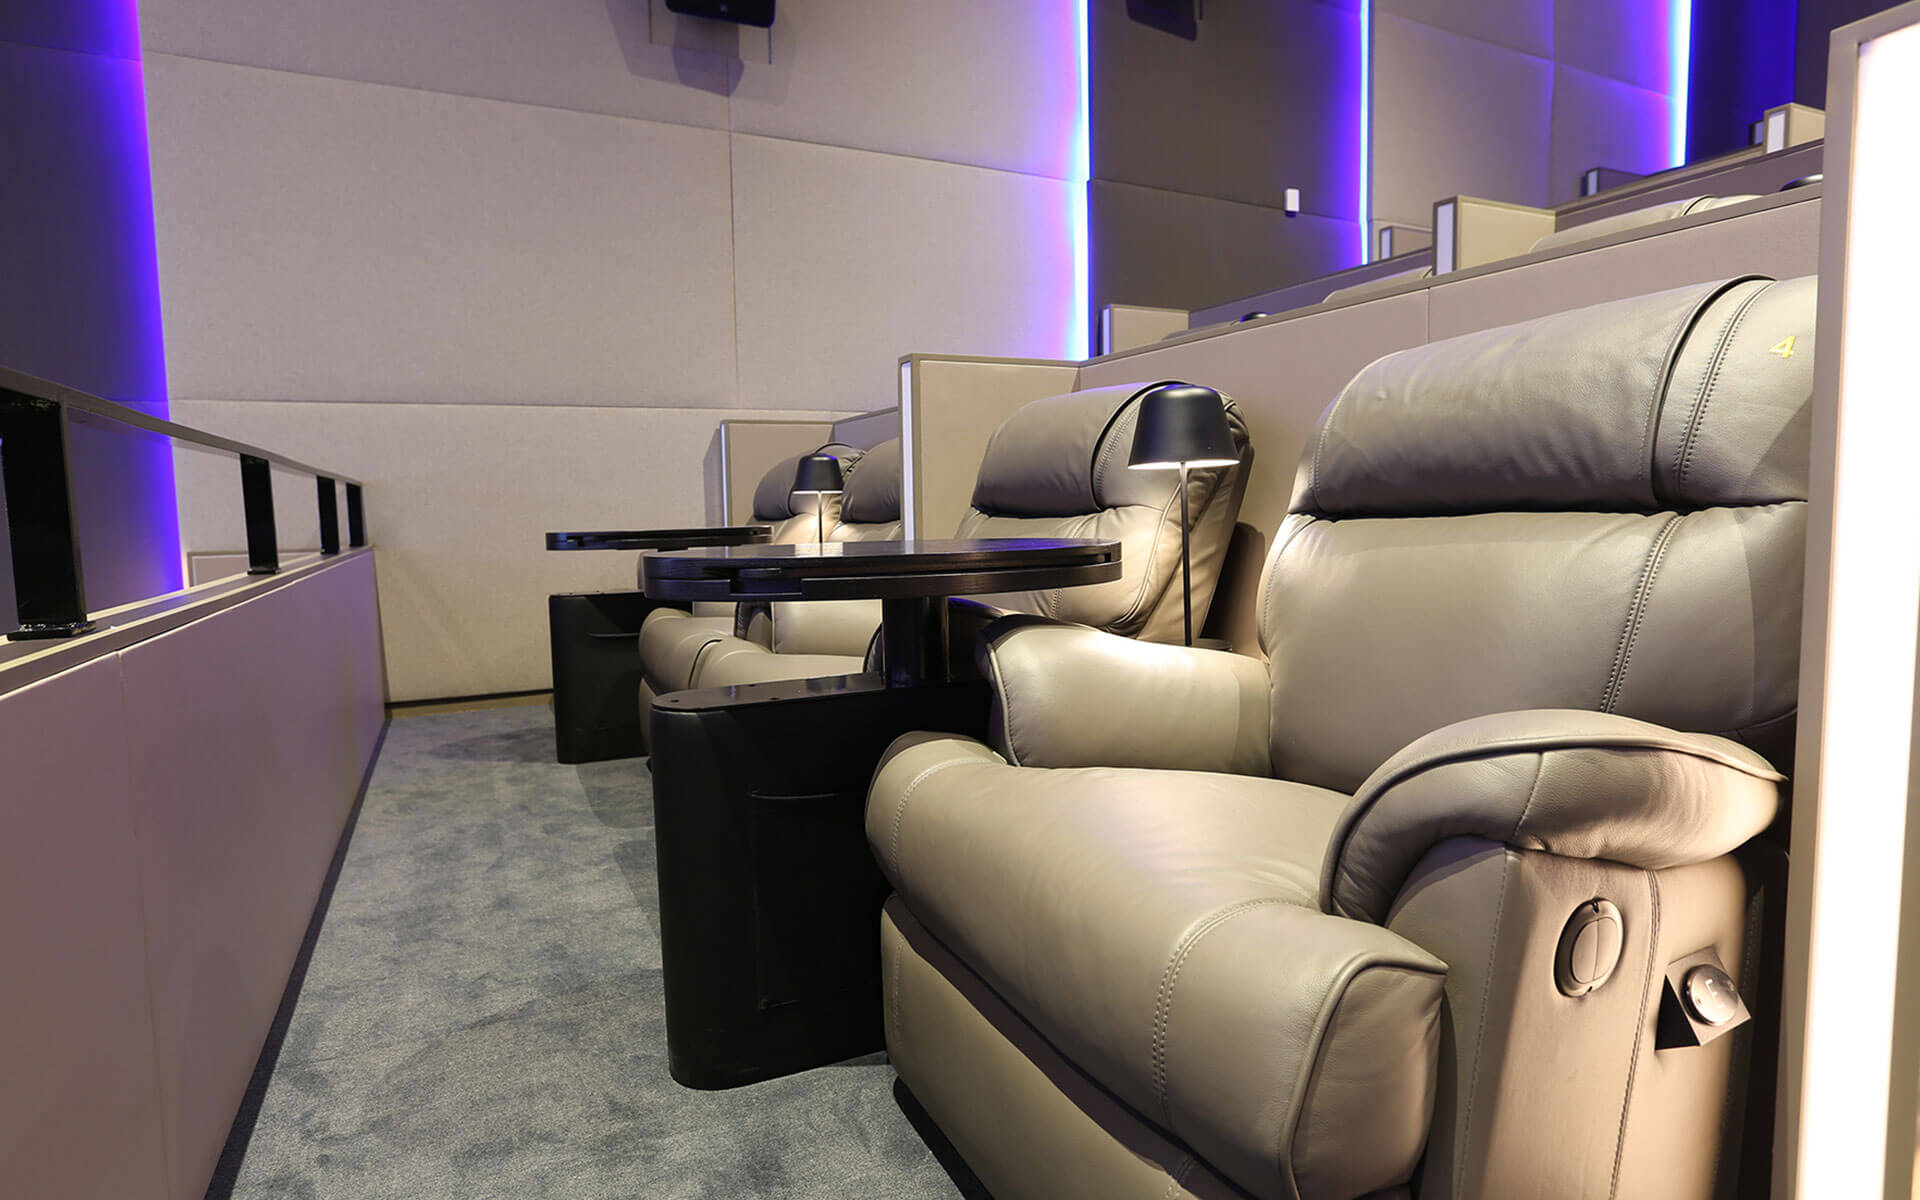 Platinum Plus Cinema Experience Roxy Cinemas Dubai